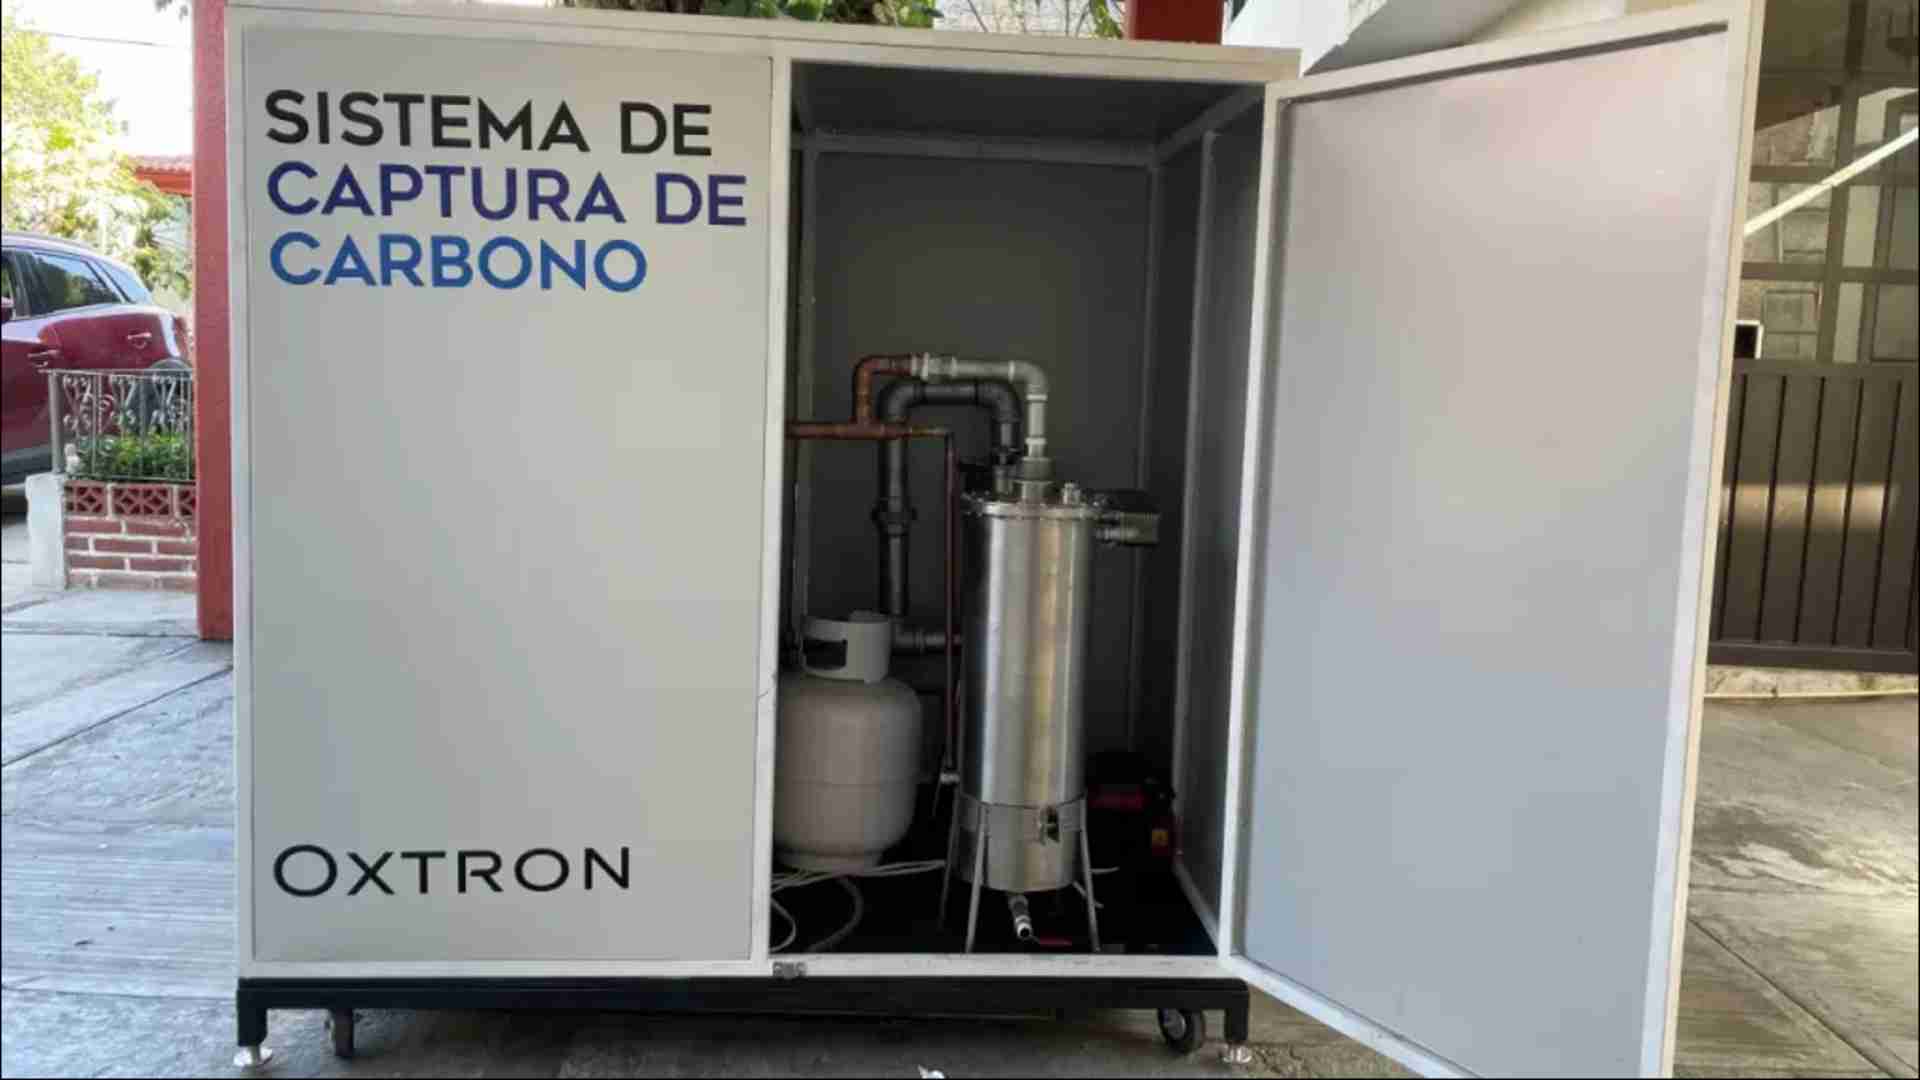 Dispositivo que ofrece Oxtron para medir y capturar las emisiones de carbono